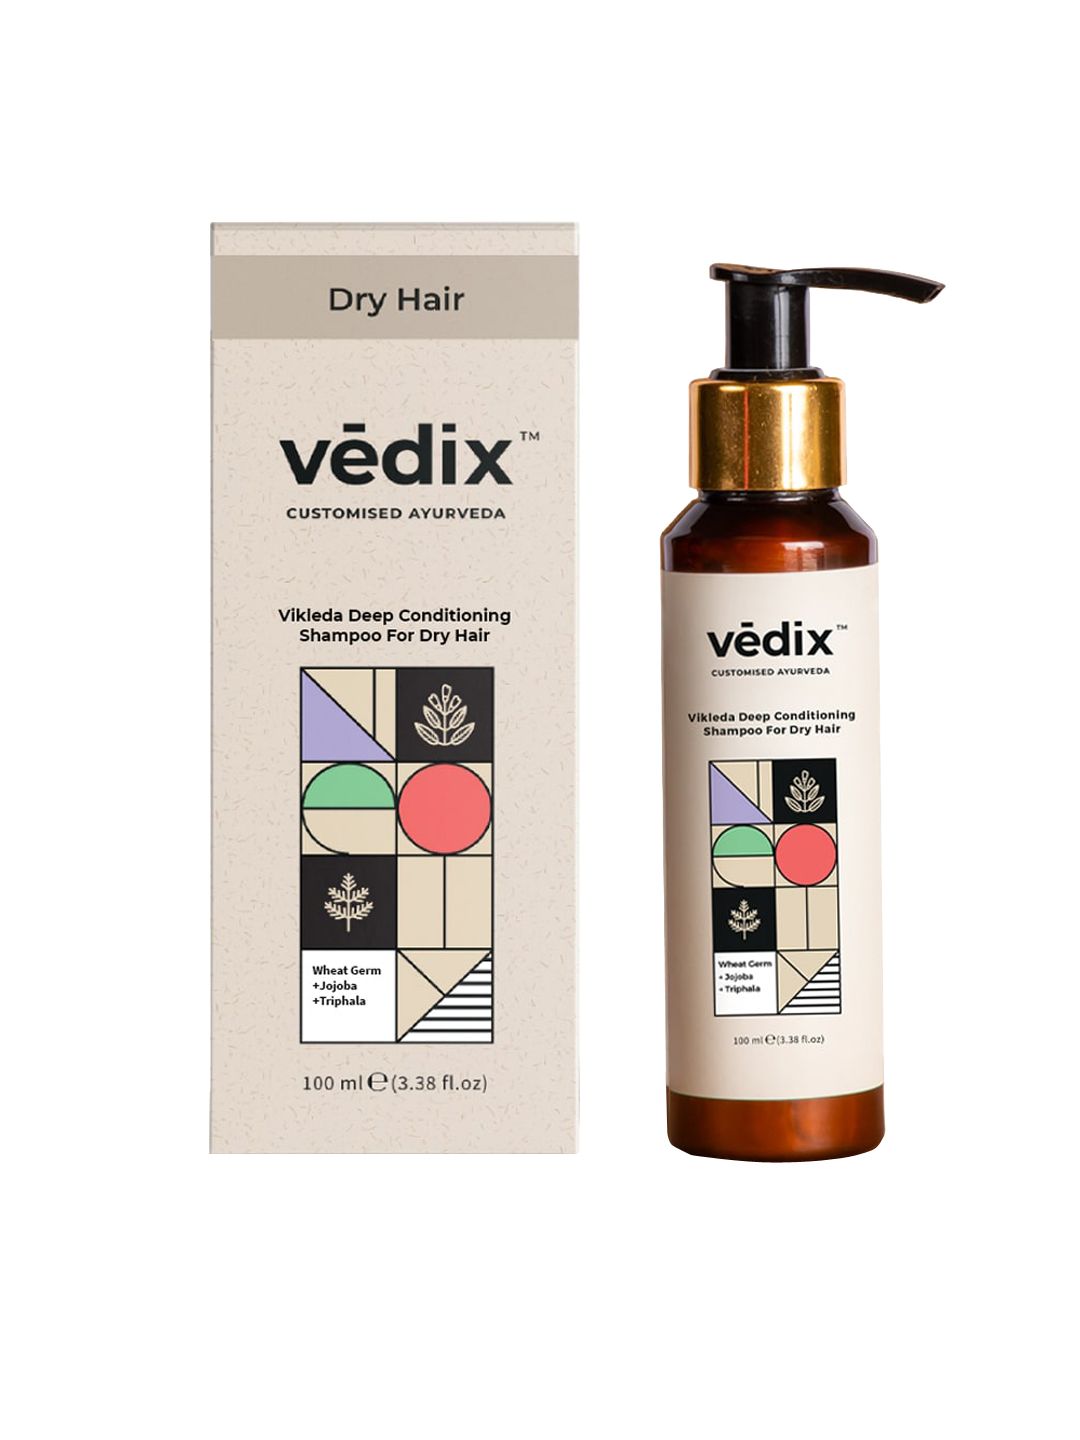 VEDIX Women Customized Ayurvedic Vikleda Deep Conditioning Anti-Hairfall Shampoo 100ml Price in India